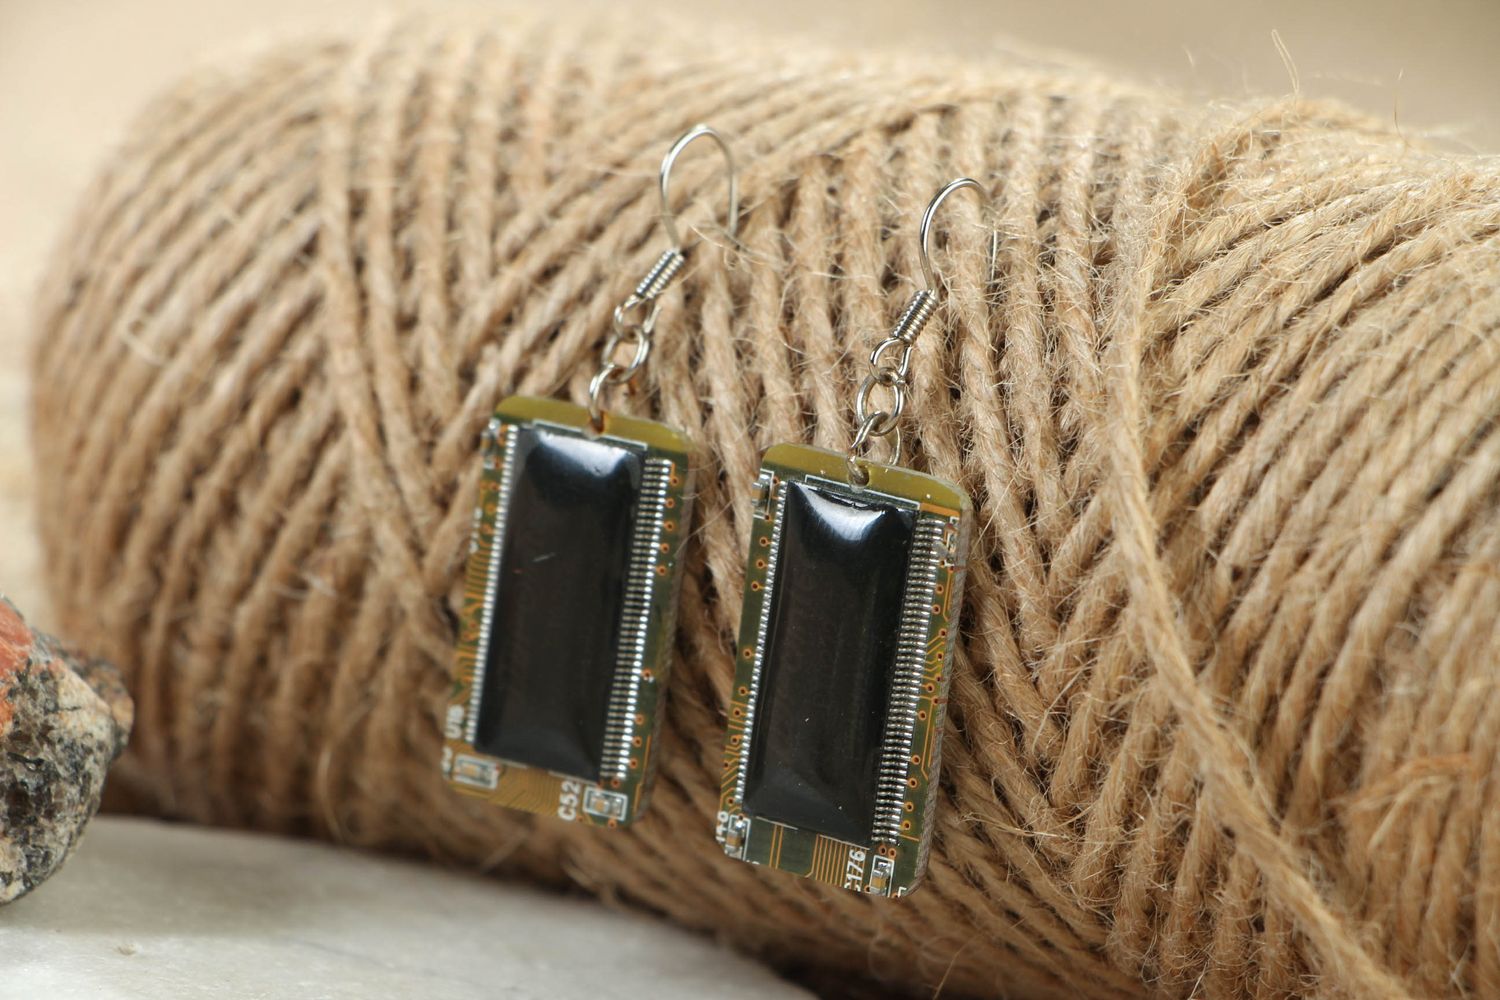 Cyberpunk earrings with microchips photo 4